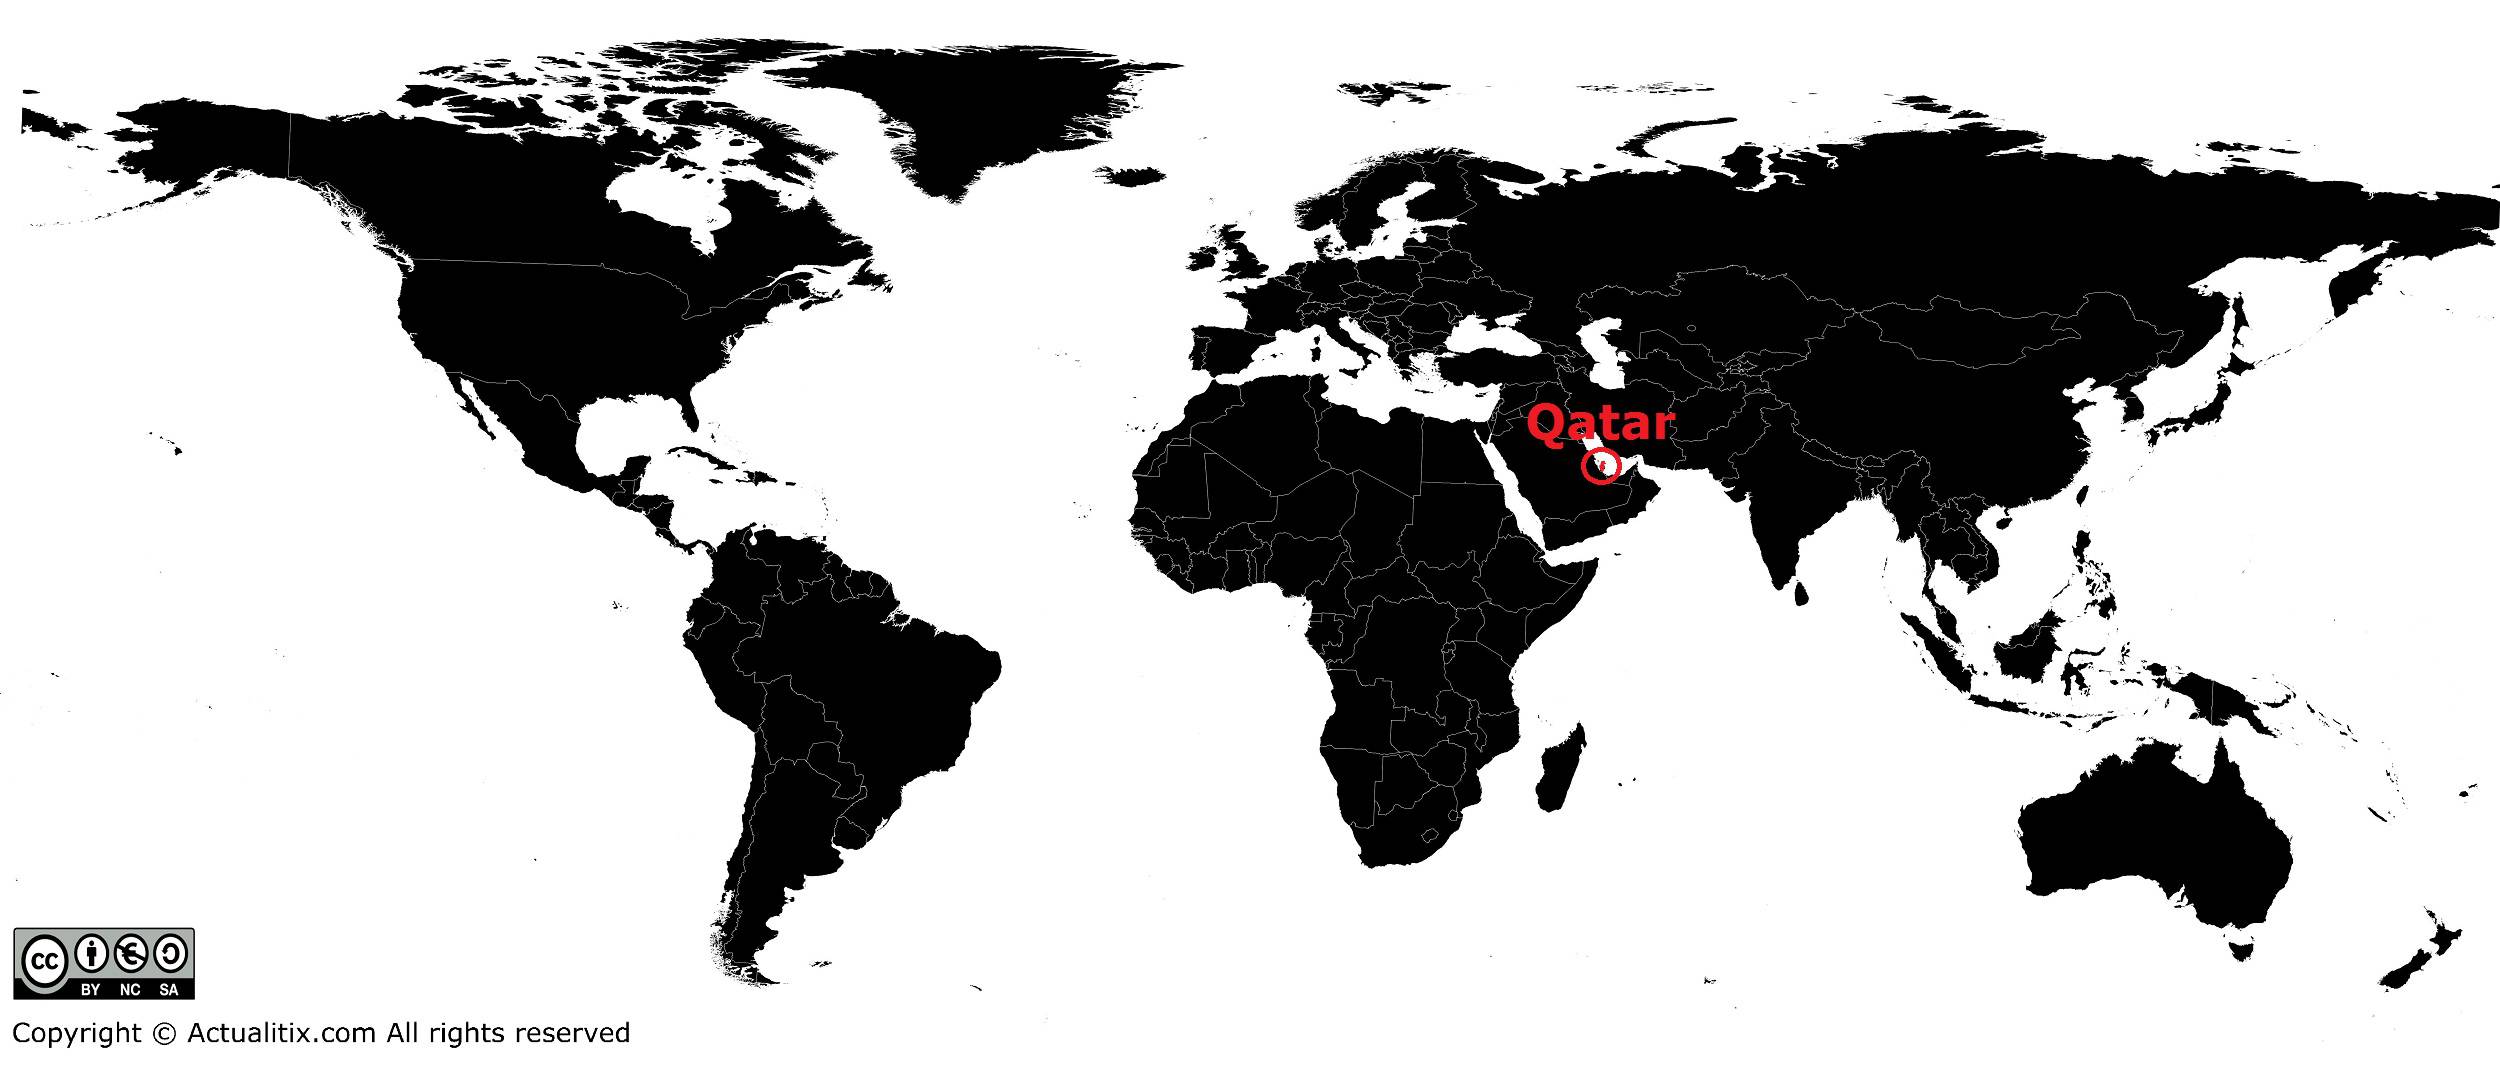 Qatar sur une carte du monde